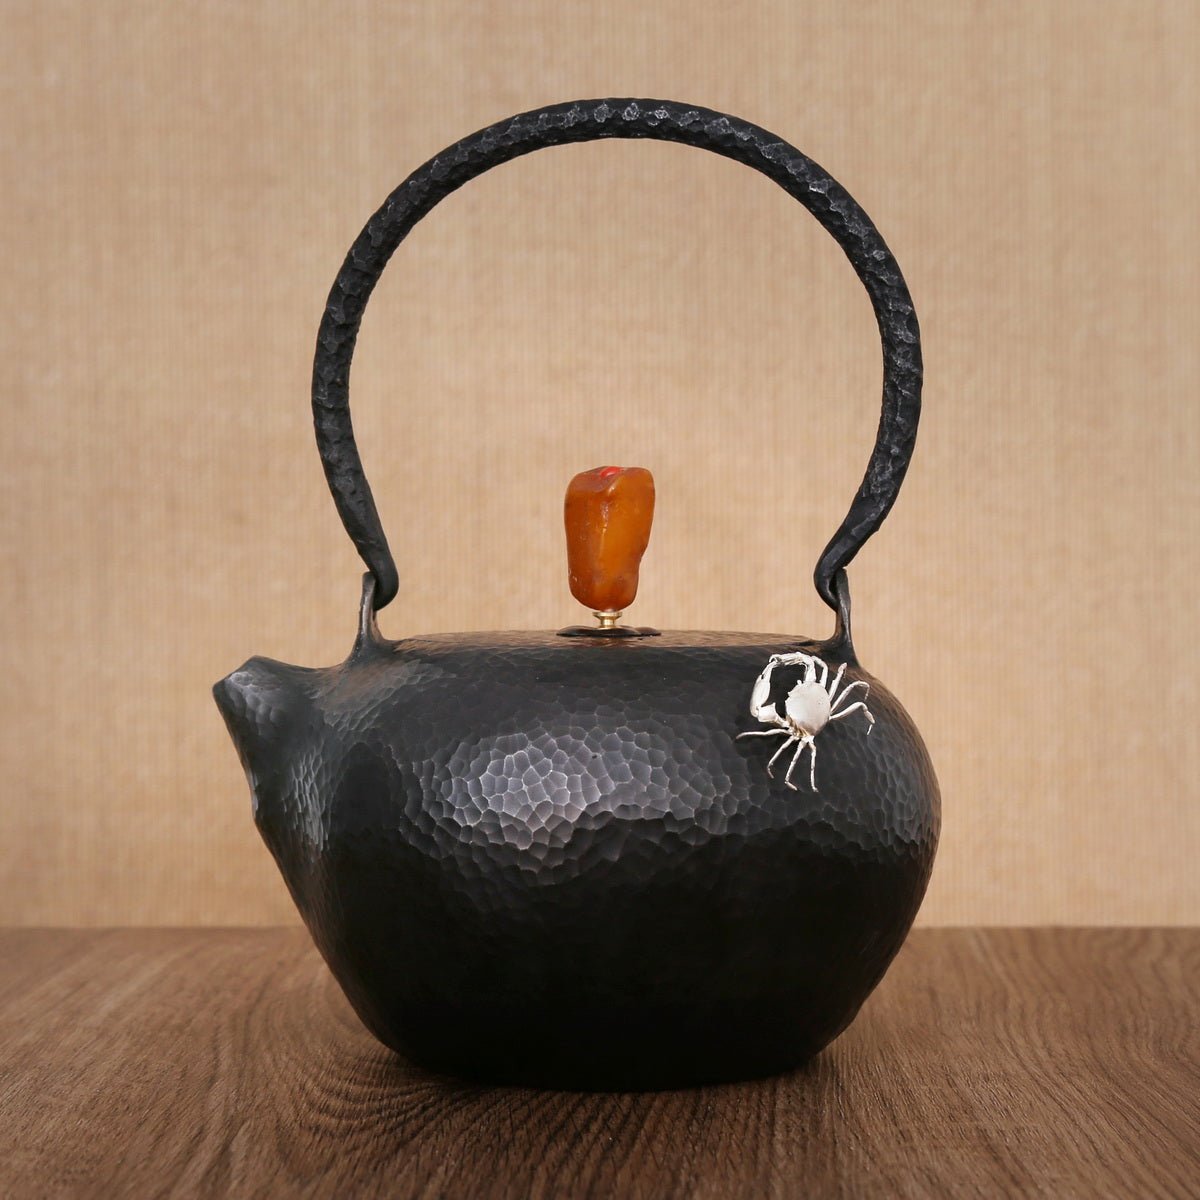 Accessories for Iron Kettle: Crab (Silver) - Taishan Tea Club